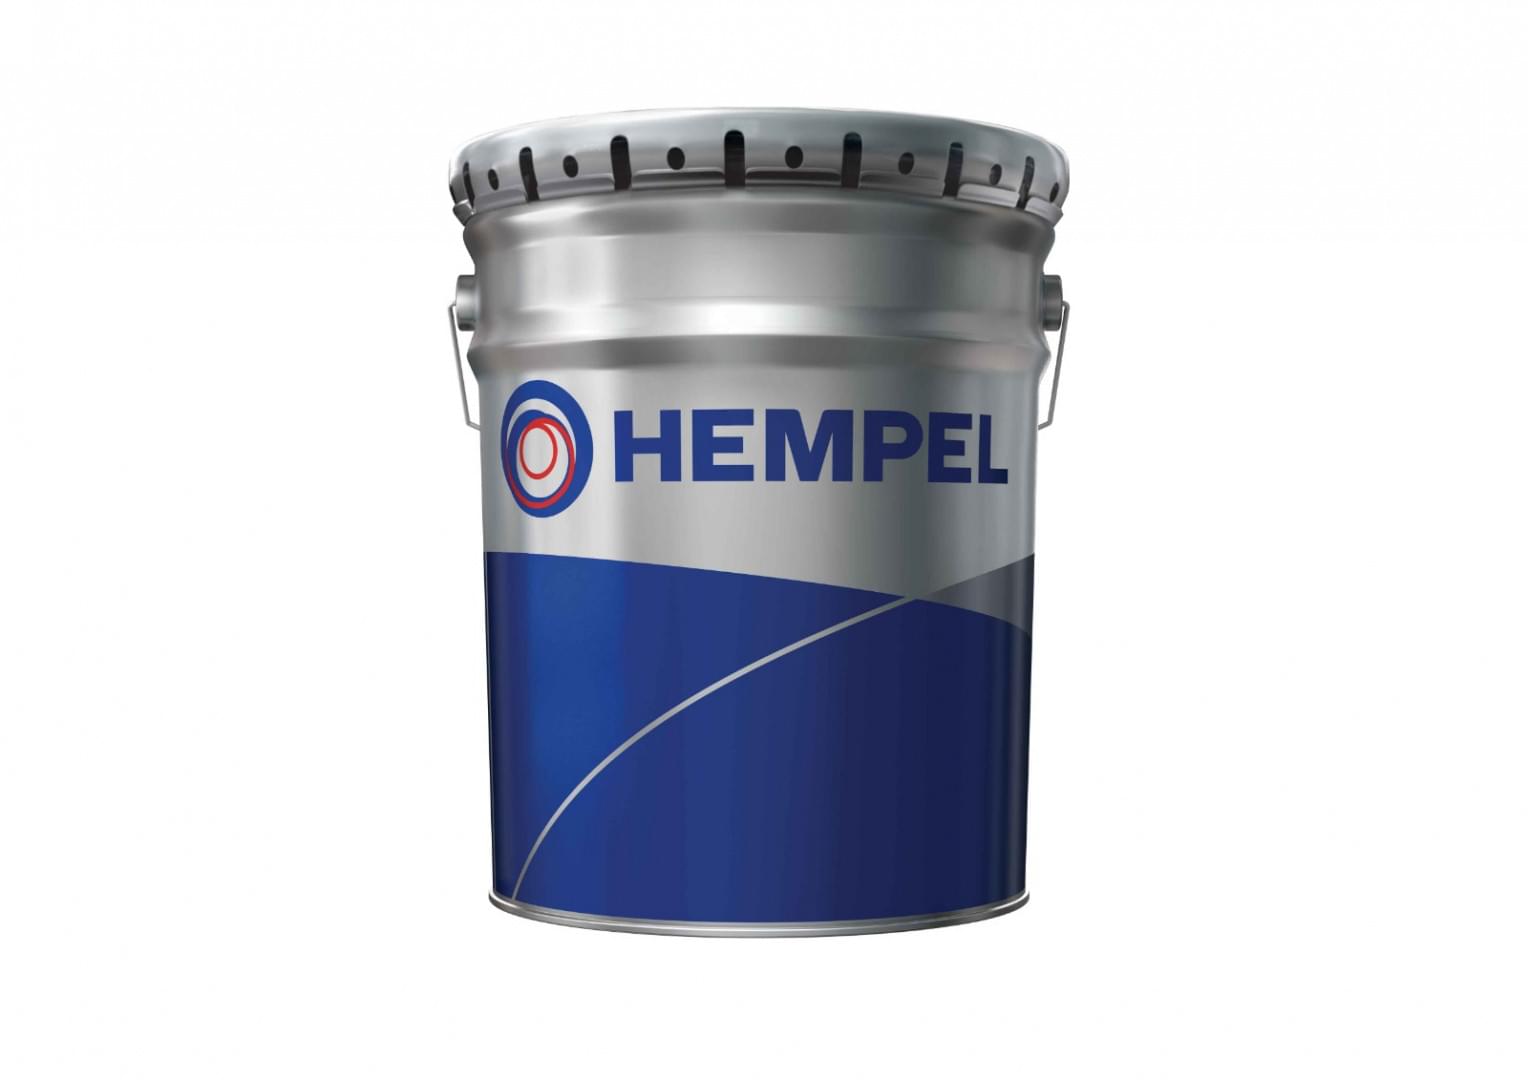 Hempafire Pro 315 from Hempel